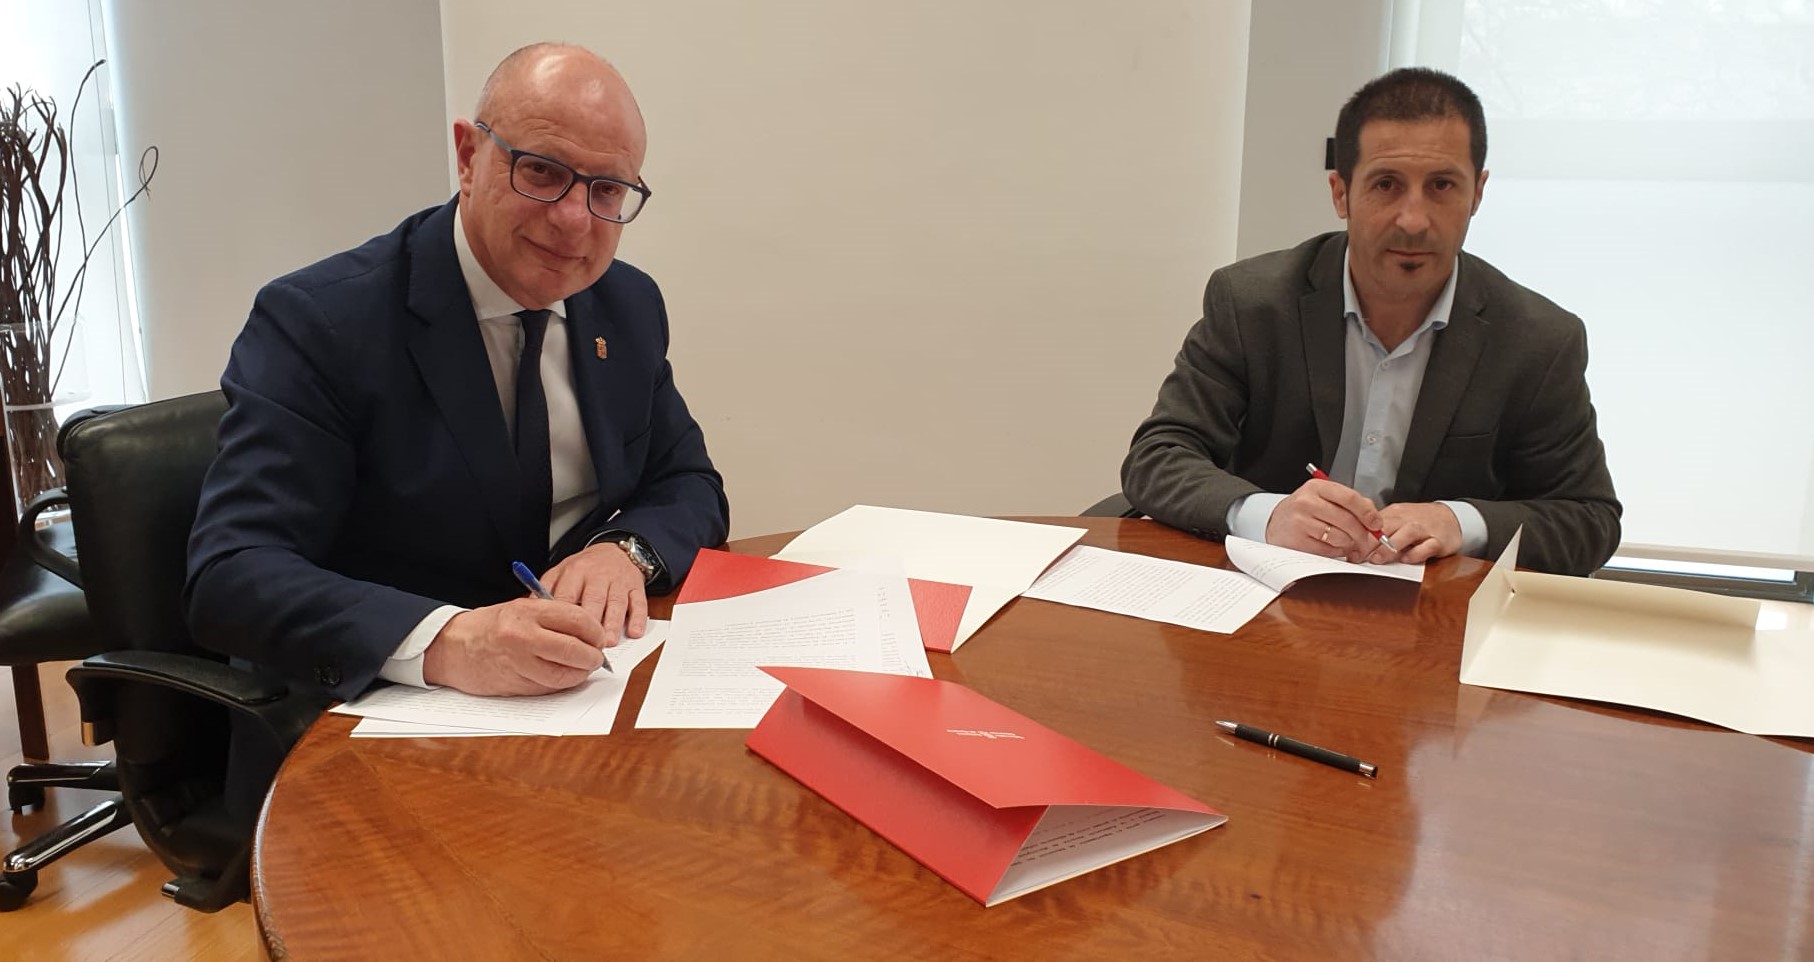 El Departamento de Educación y la FNMC firman el convenio para definir la gestión del primer ciclo de la Educación Infantil en Navarra